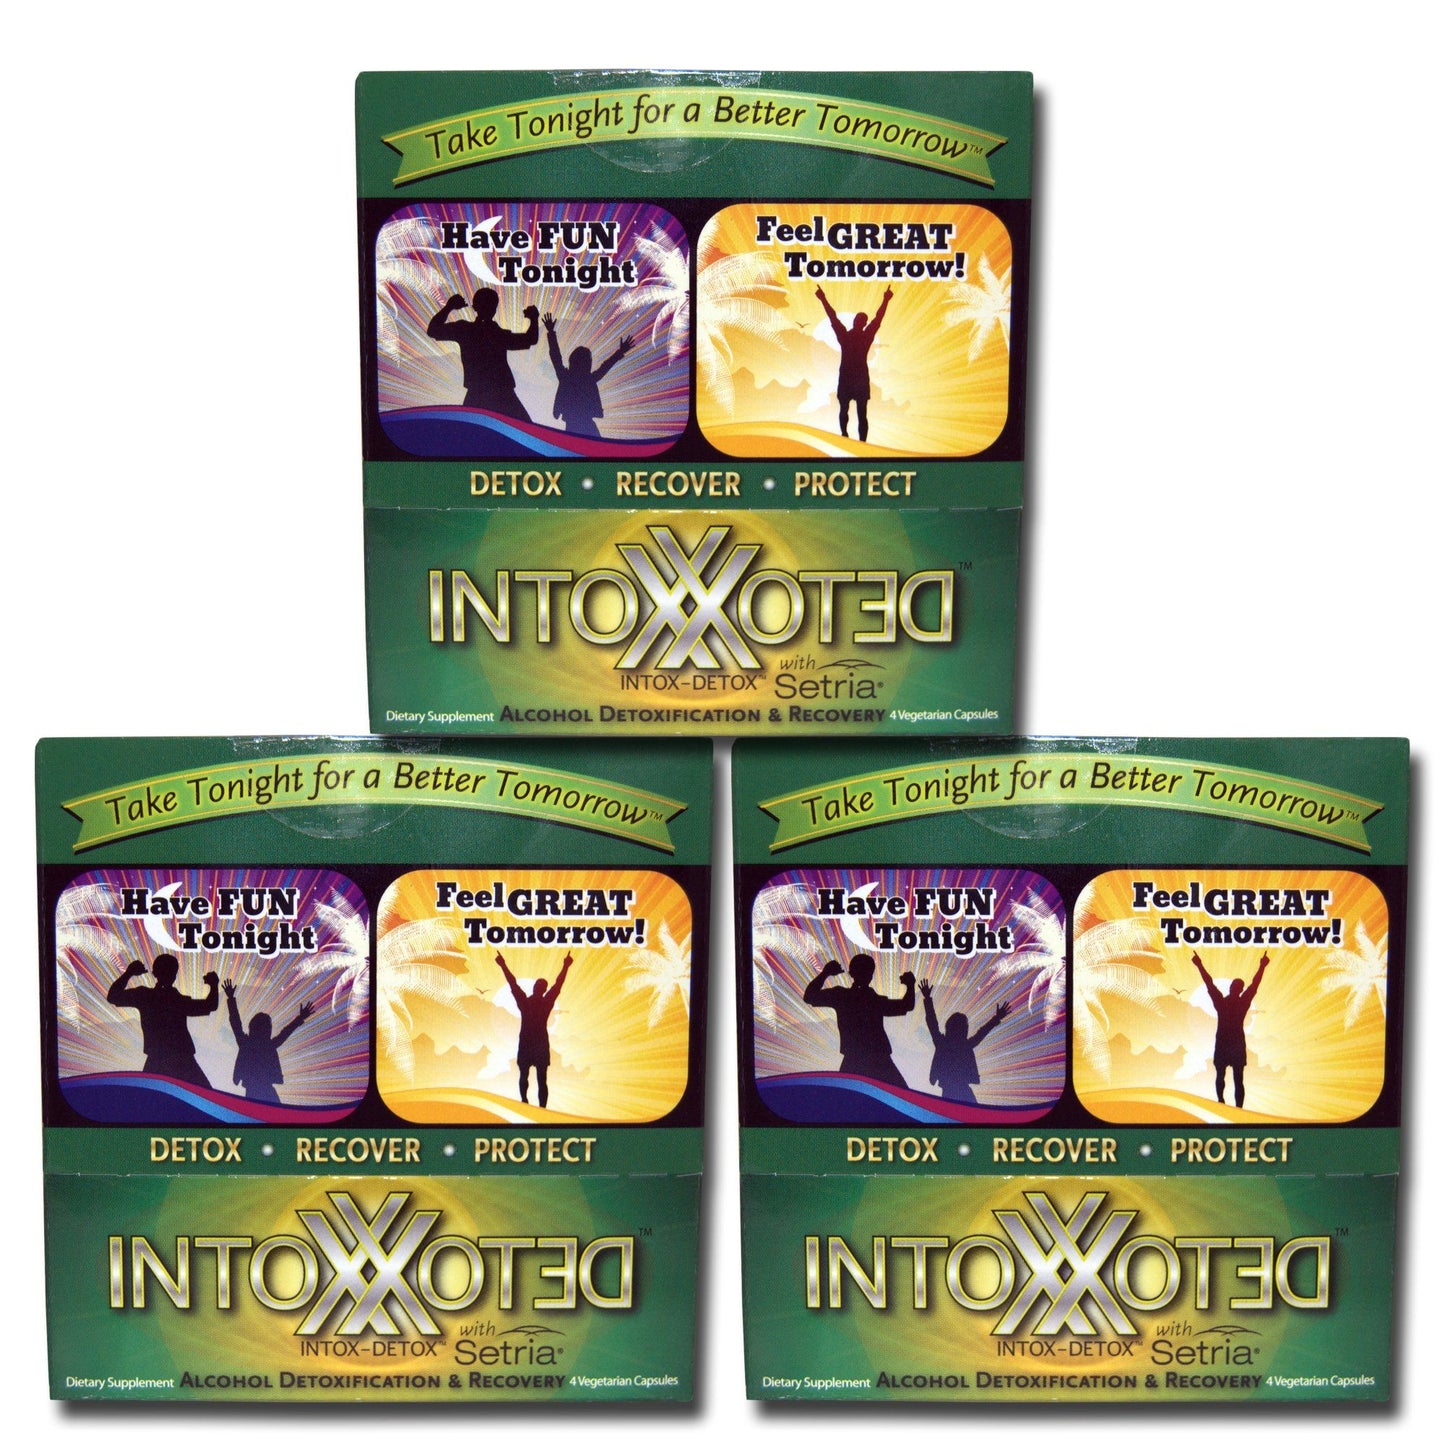 Intox-Detox